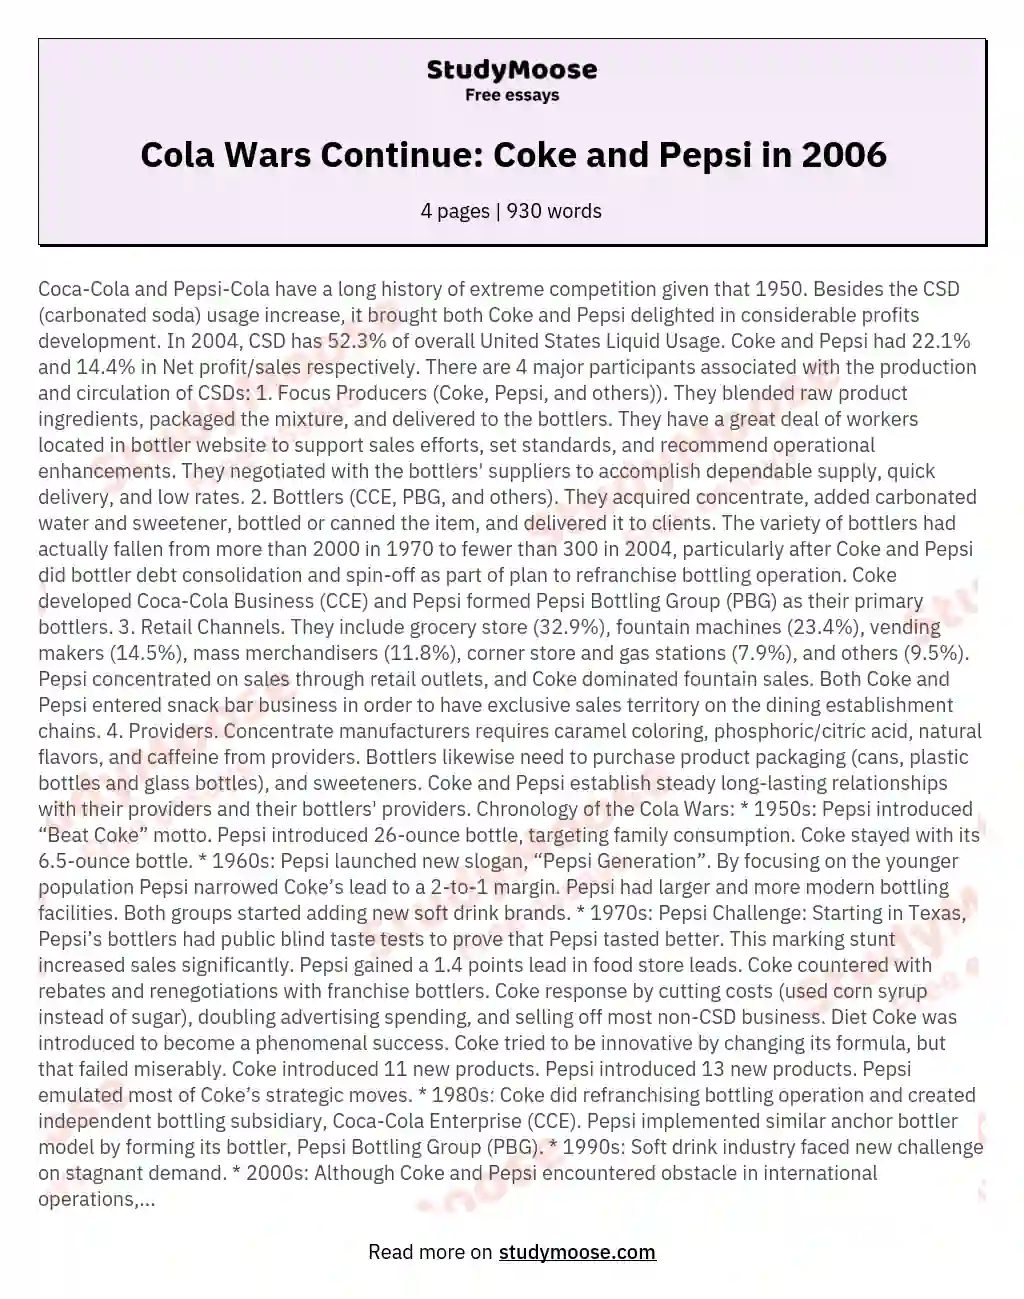 Cola Wars Continue: Coke and Pepsi in 2006 essay